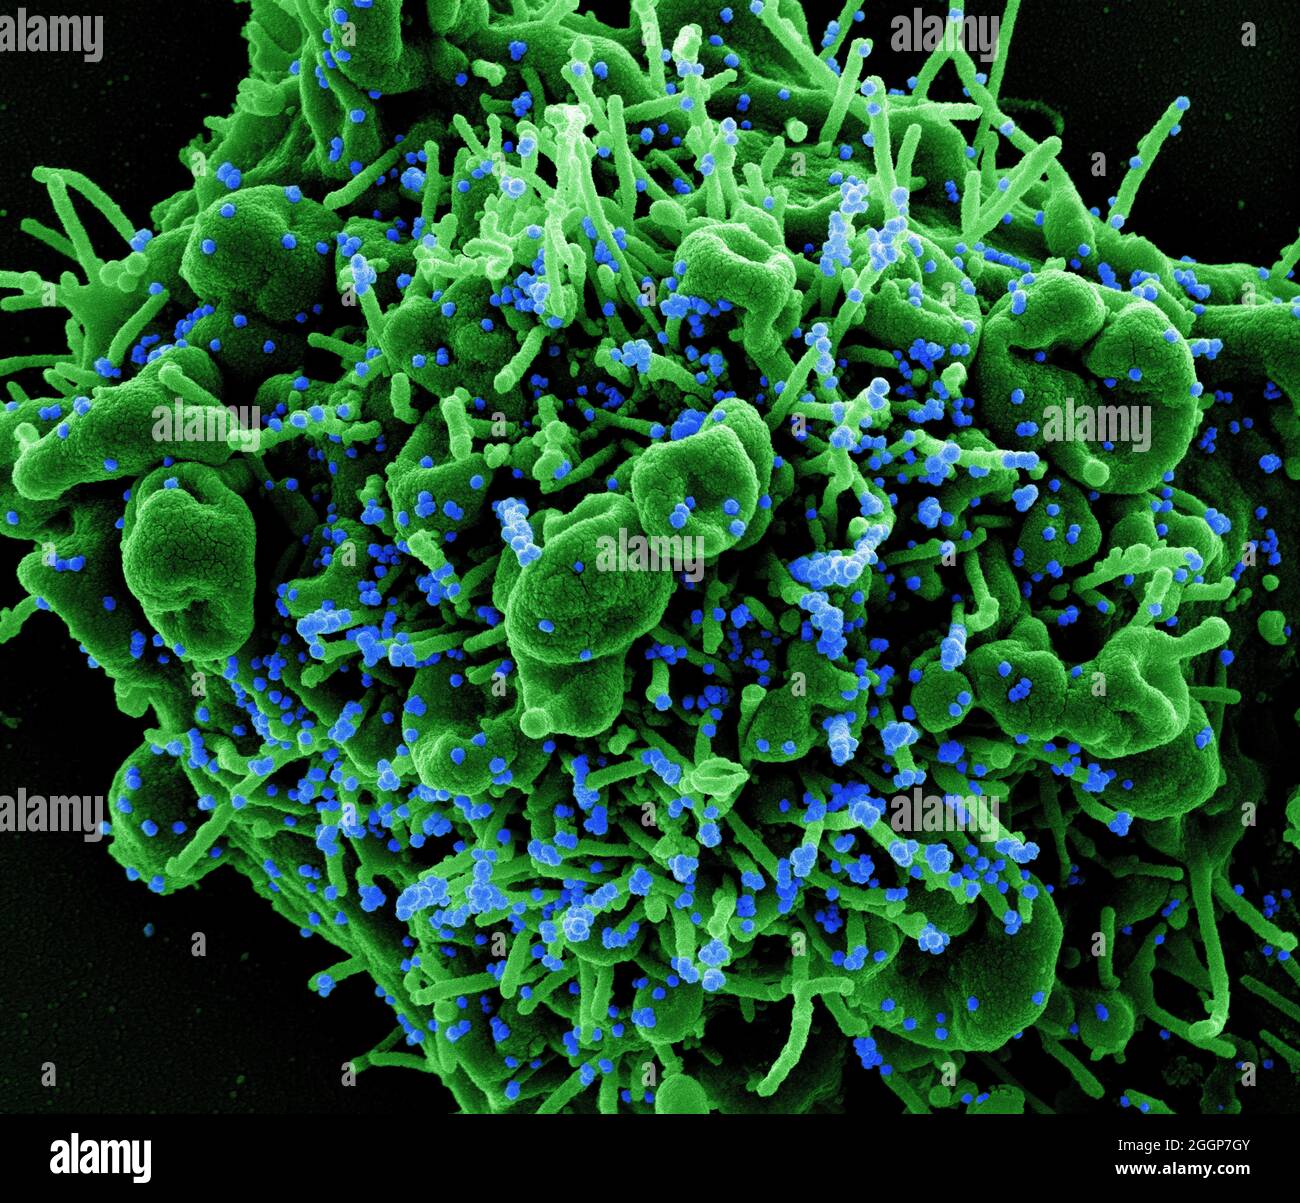 Micrografia elettronica a scansione colorata di una cellula apoptotica (verde) infettata con particelle di virus SARS-COV-2 (blu), isolate da un campione di paziente. Foto Stock